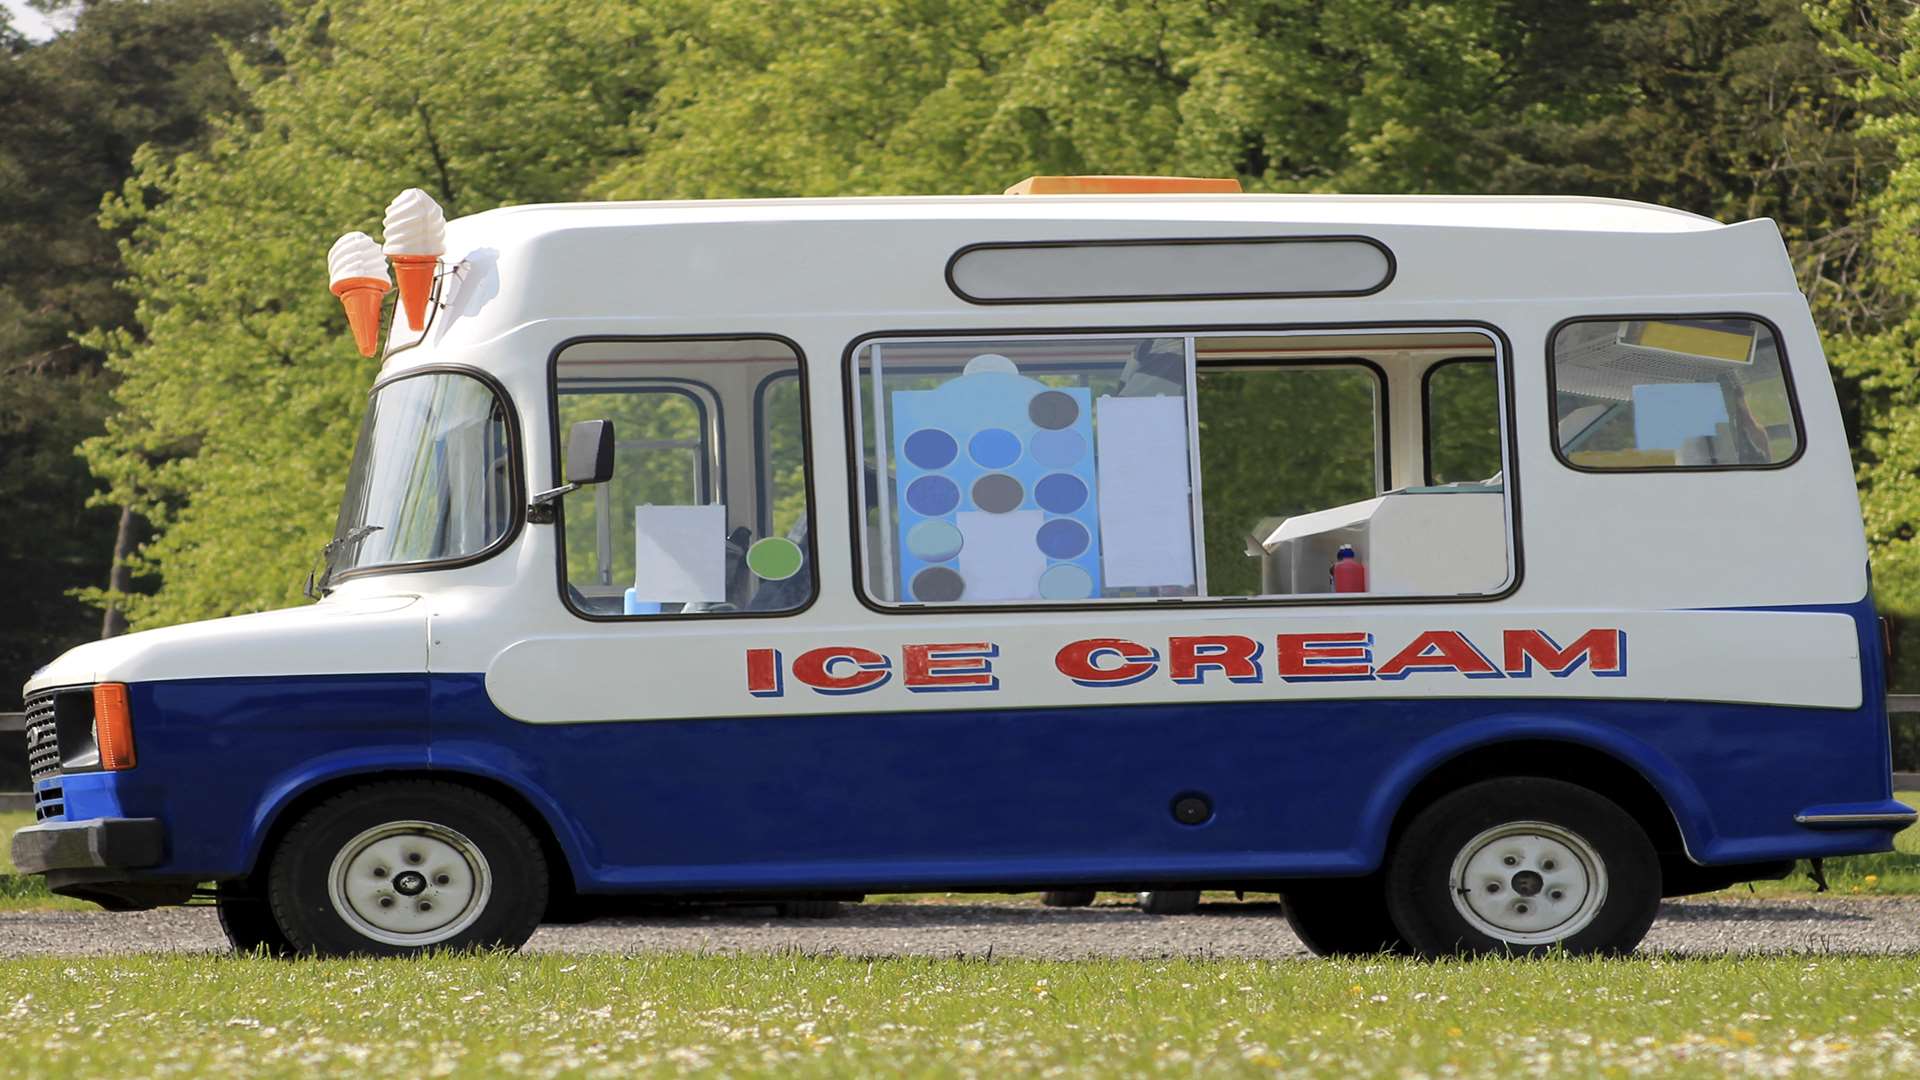 Ice cream van. Stock image